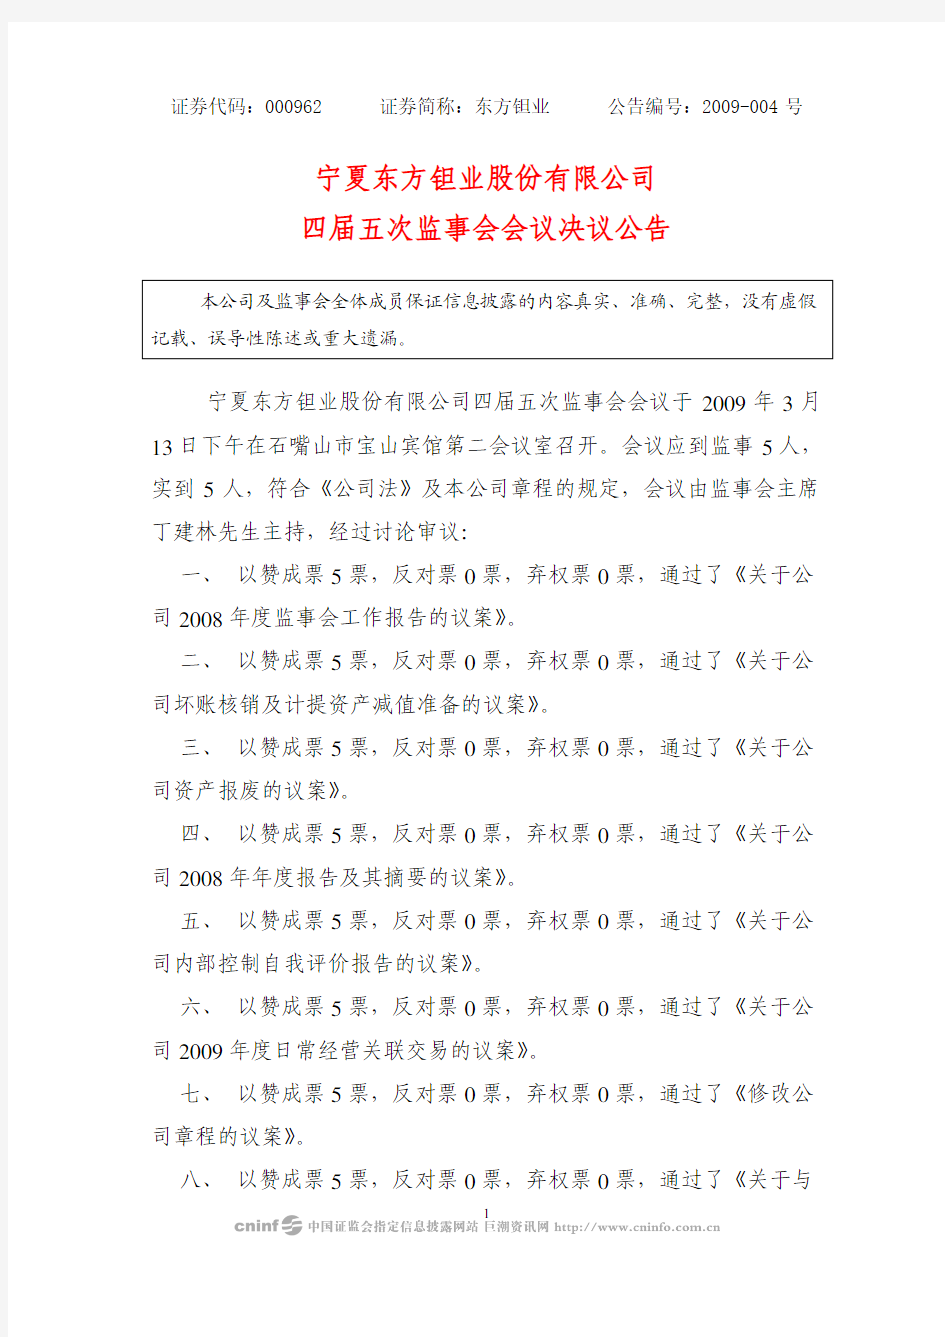 宁夏东方钽业股份有限公司四届五次监事会会议决议公告